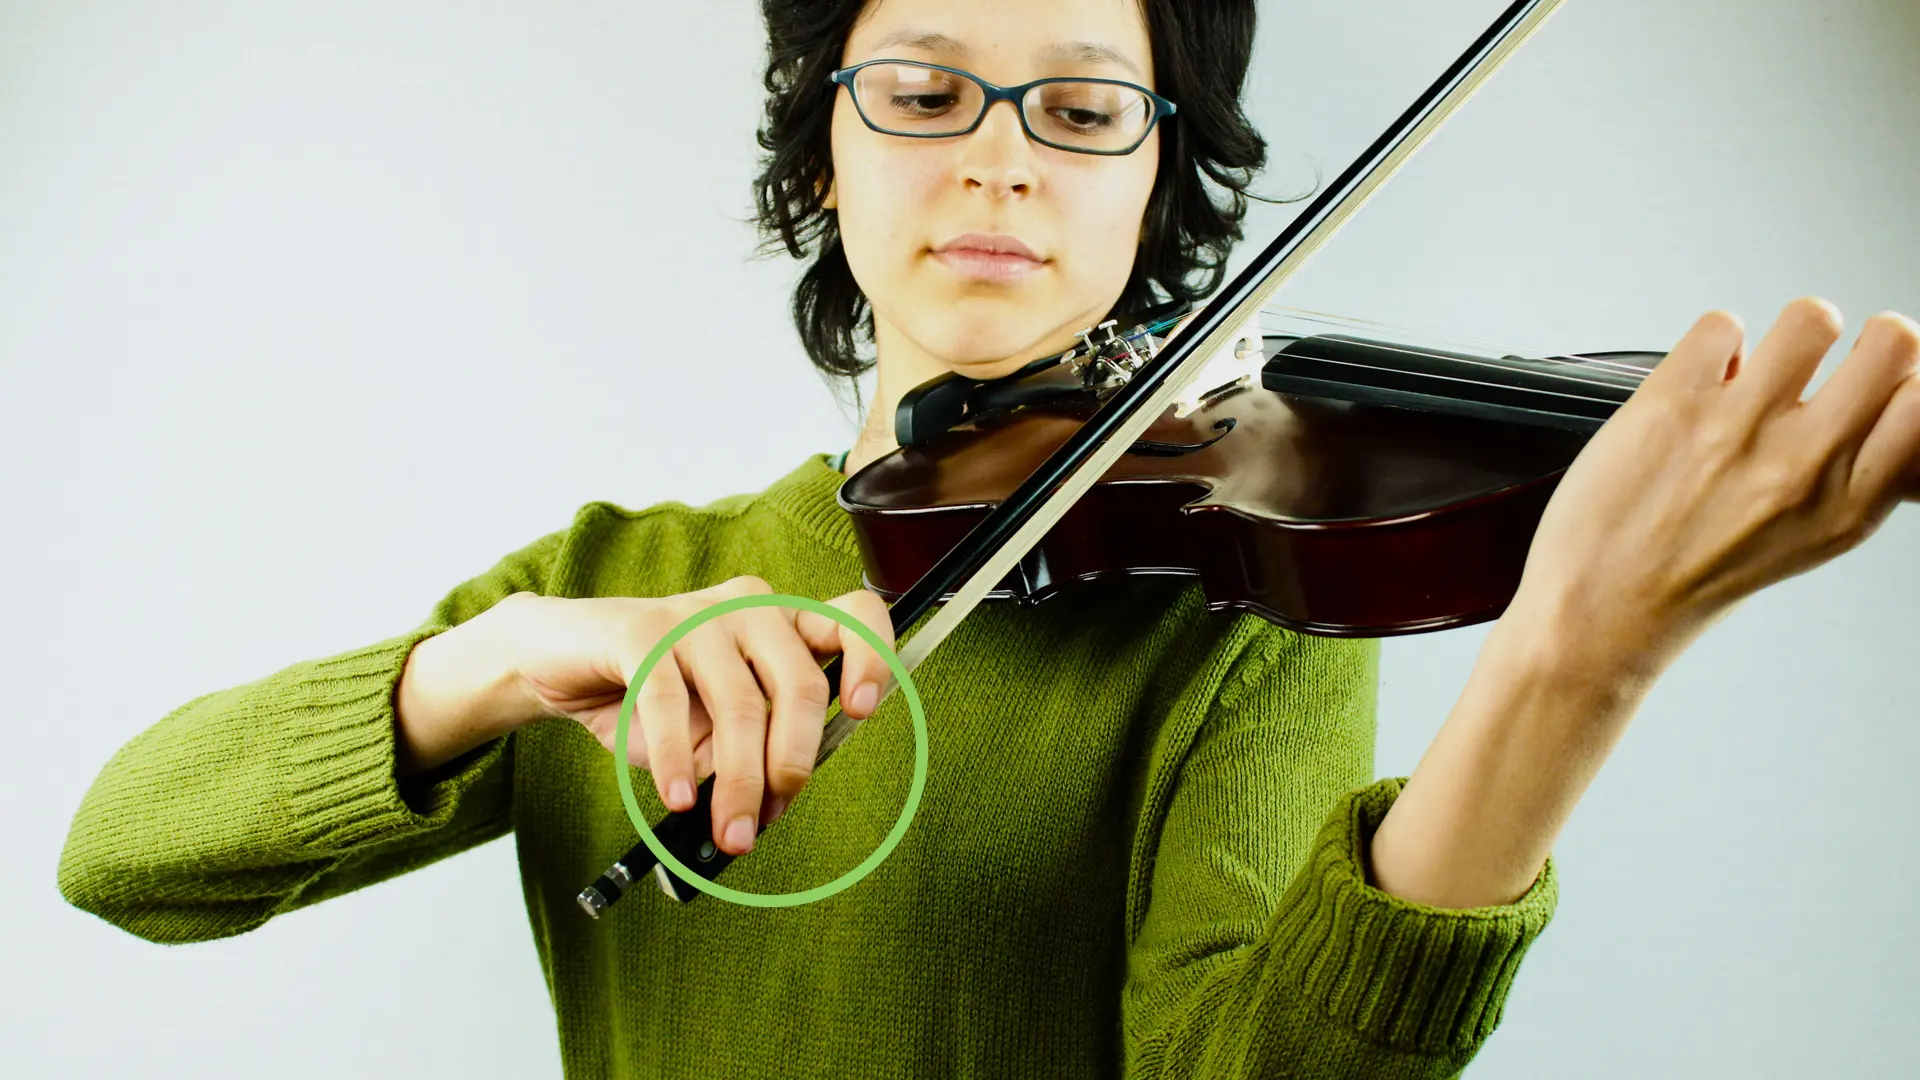 vestimenta correcta para tocar violin - Qué debo ponerme para mi recital de violín